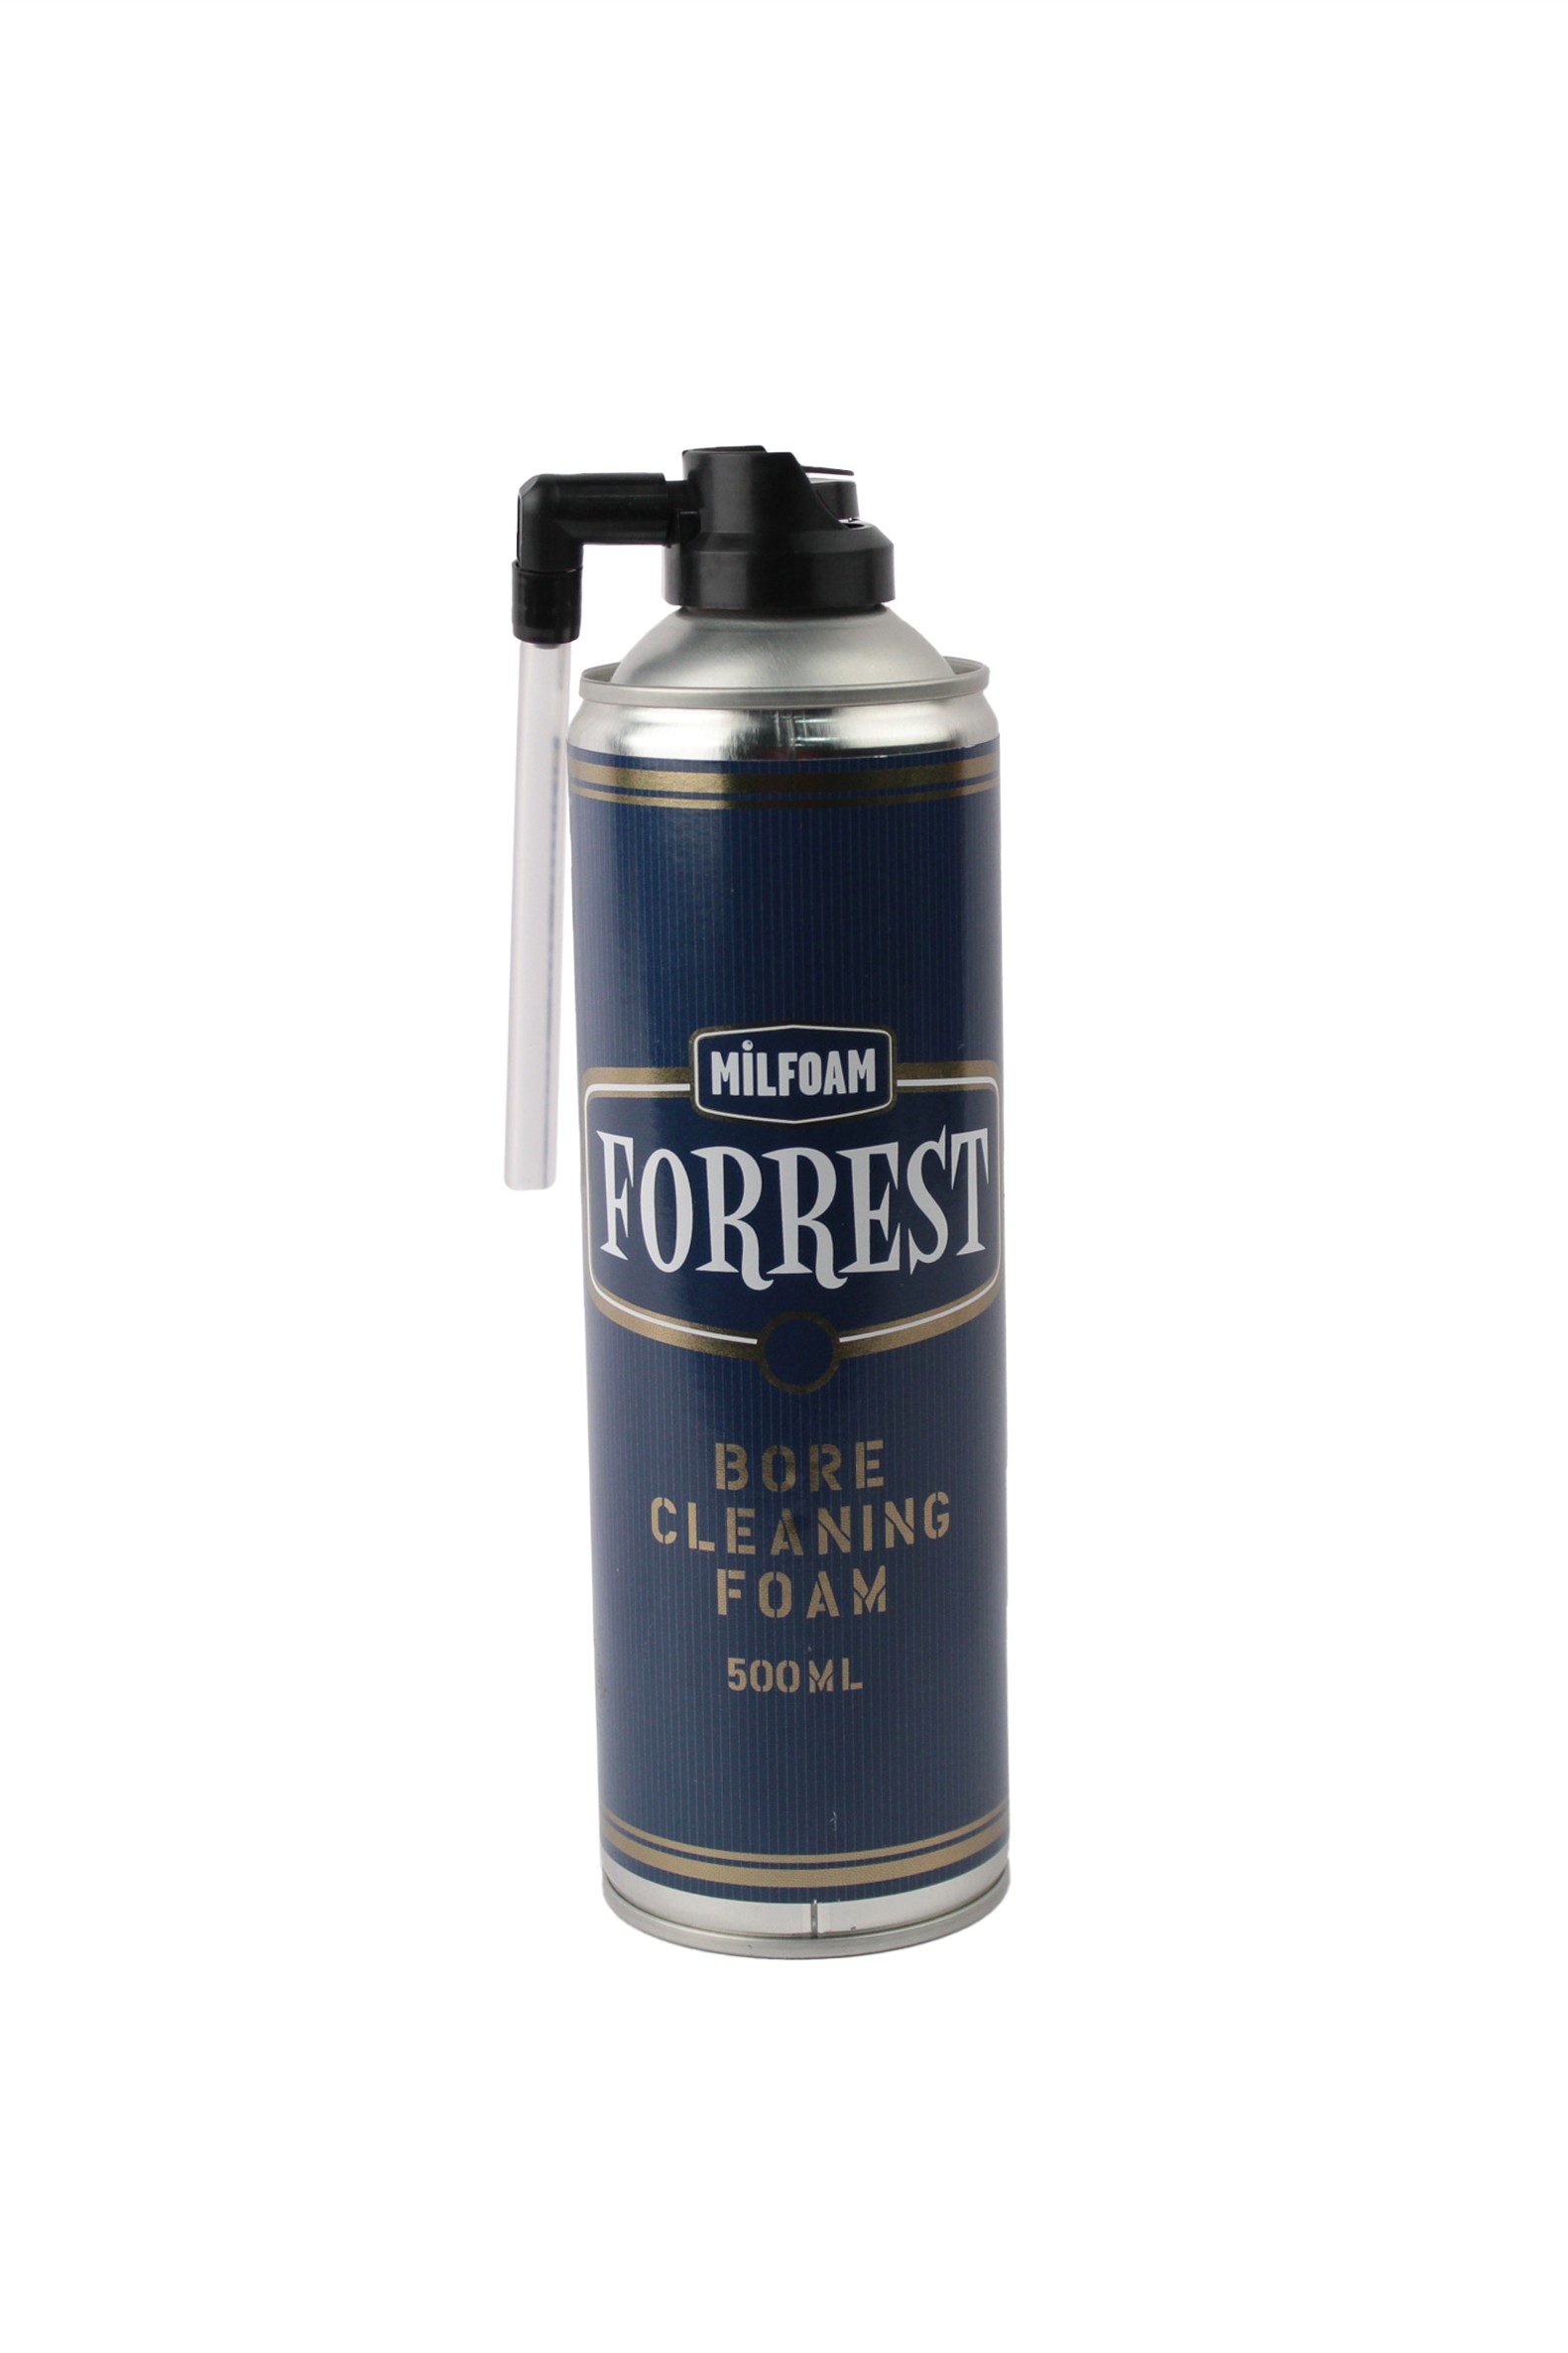 Чистящая пена Forrest для оружия 500ml аэрозоль - фото 1